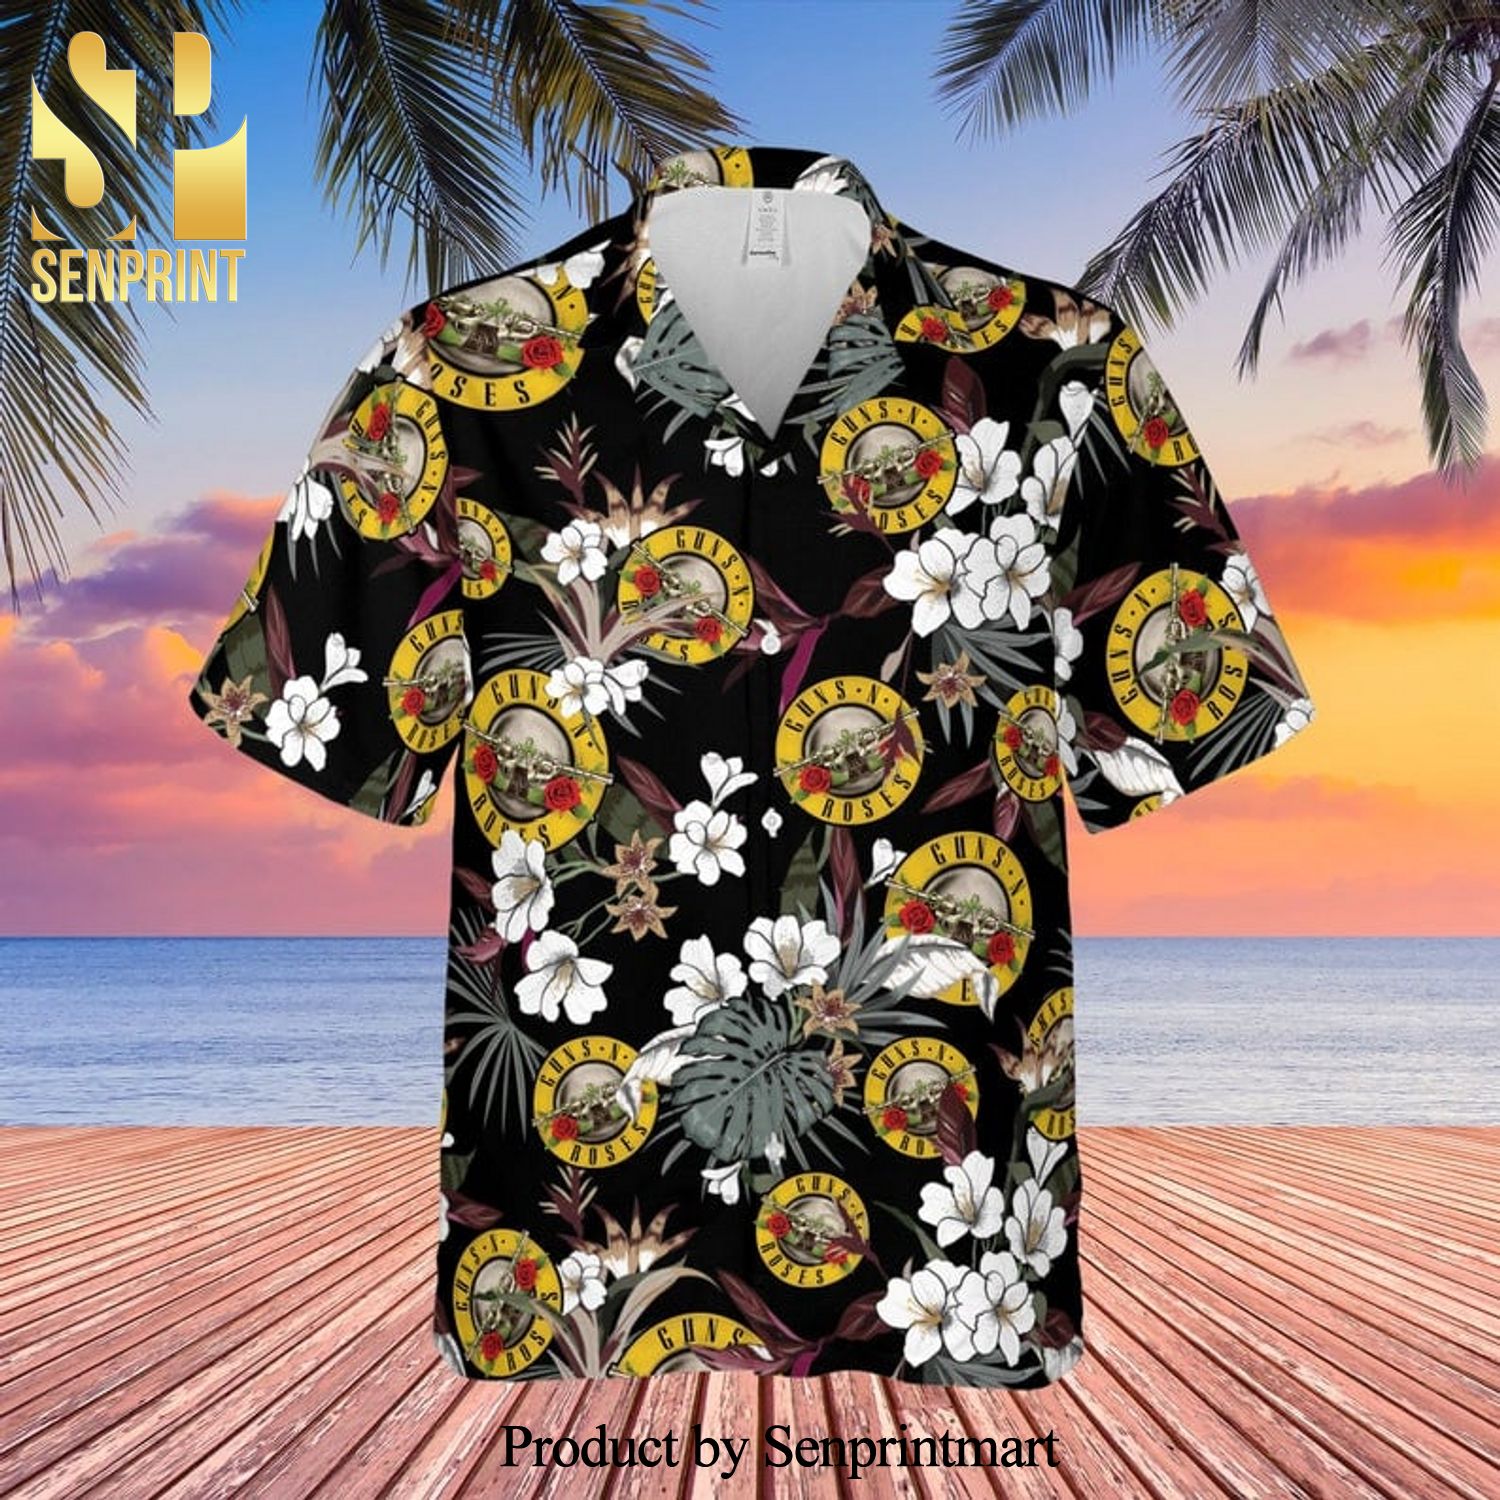 Guns N’ Roses Rock Band And Tropical Forest Full Printing Hawaiian Shirt – Black